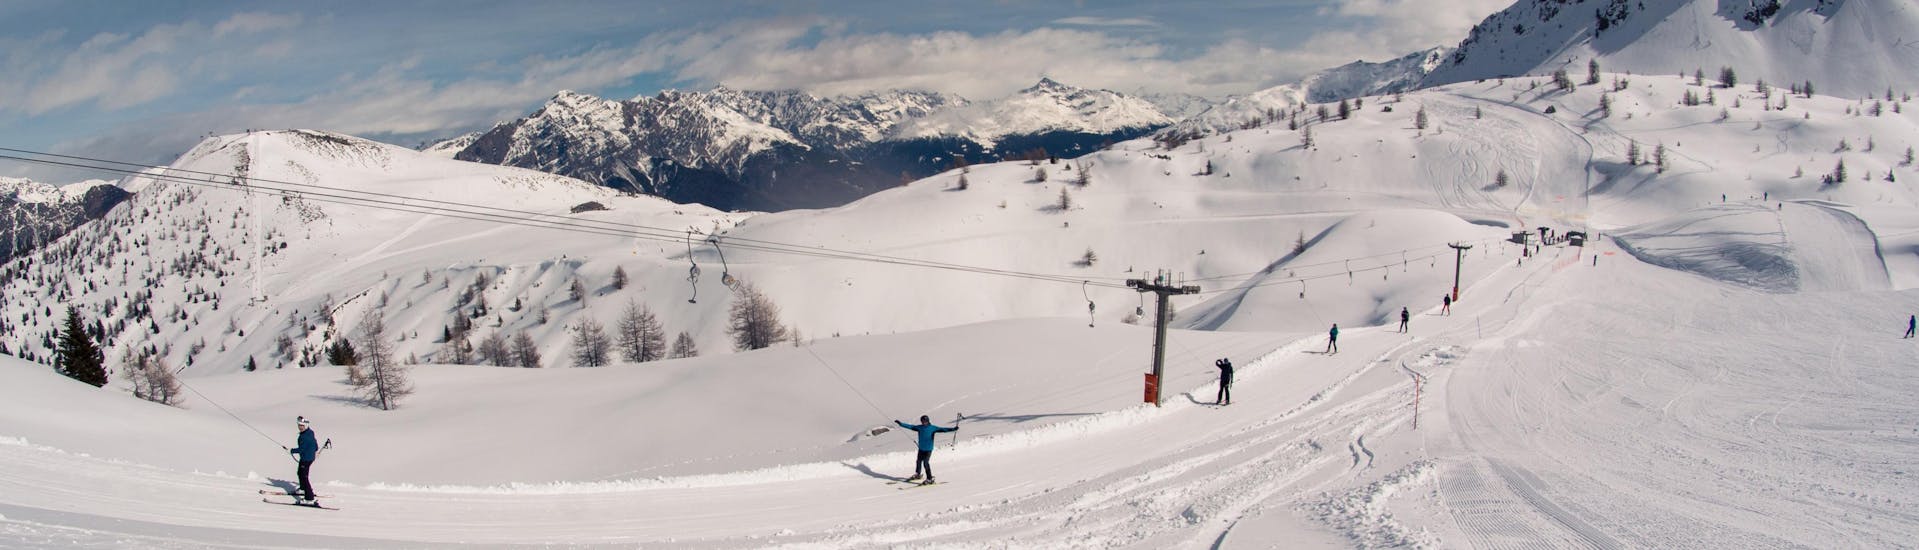 iatori che risalgono le piste con uno skilift a Bormio, Italia.